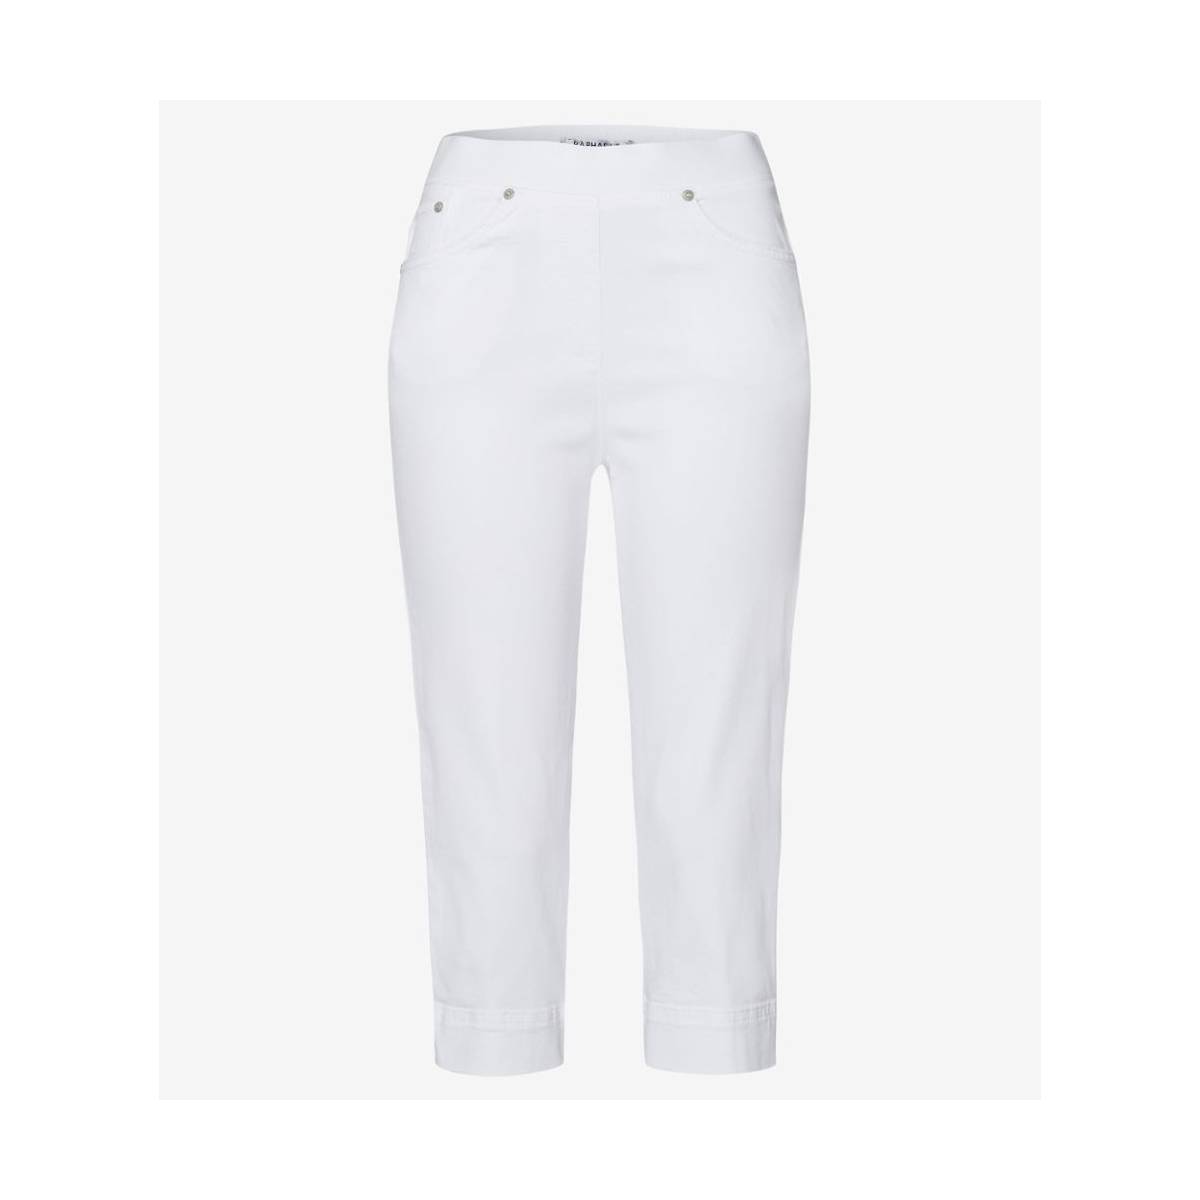 RAPHAELA  broeken wit -  model 14-6308 10960420 - Dameskleding broeken wit